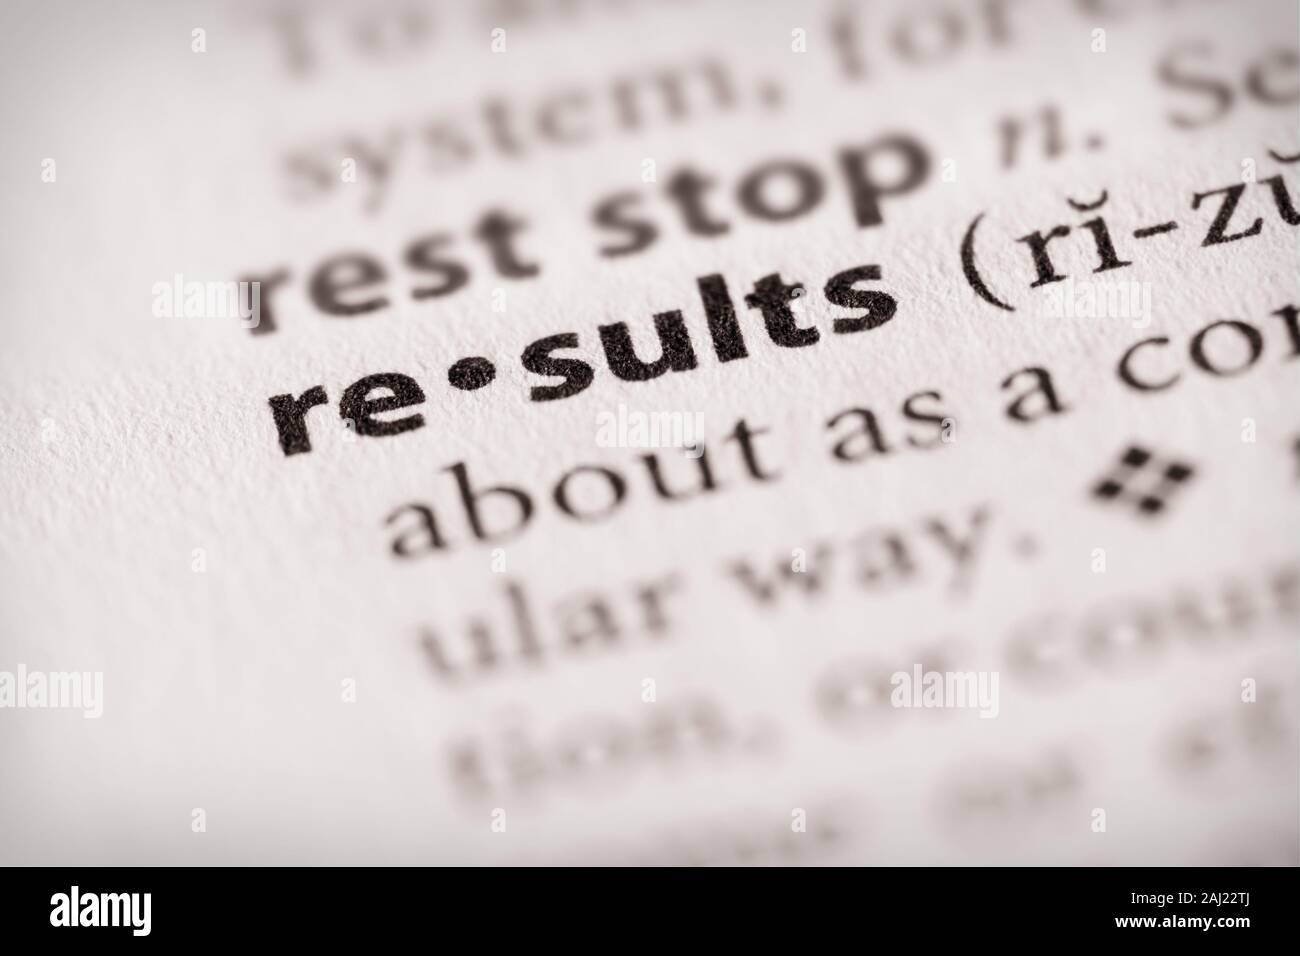 Selektiver Fokus auf das Wort "Ergebnisse". Viele weitere Wort Fotos in meinem Portfolio. Stockfoto